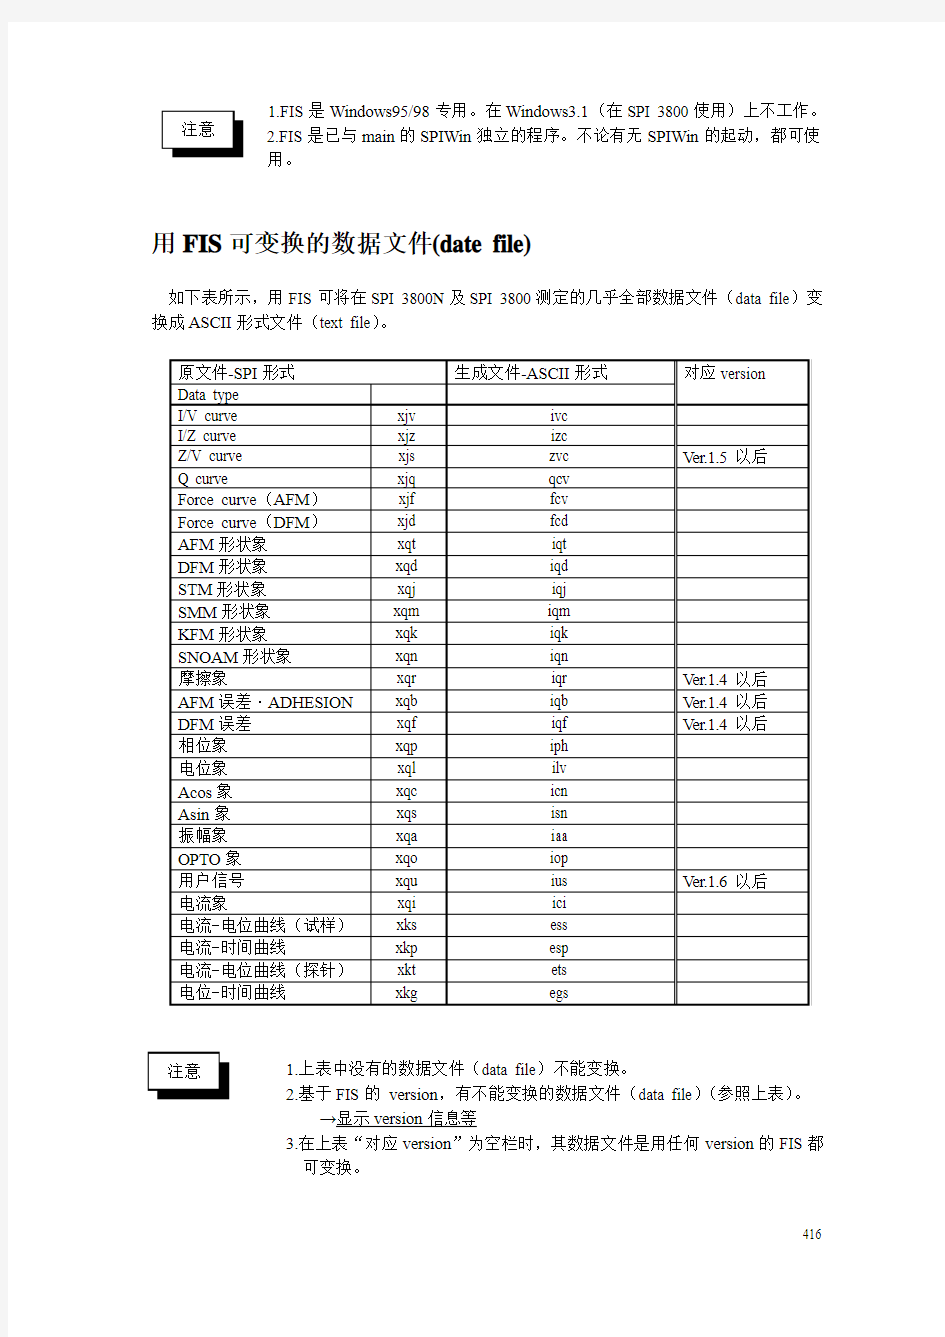 日本精工SPA-400原子力显微镜说明书(中文版)-F(U-03)FIS